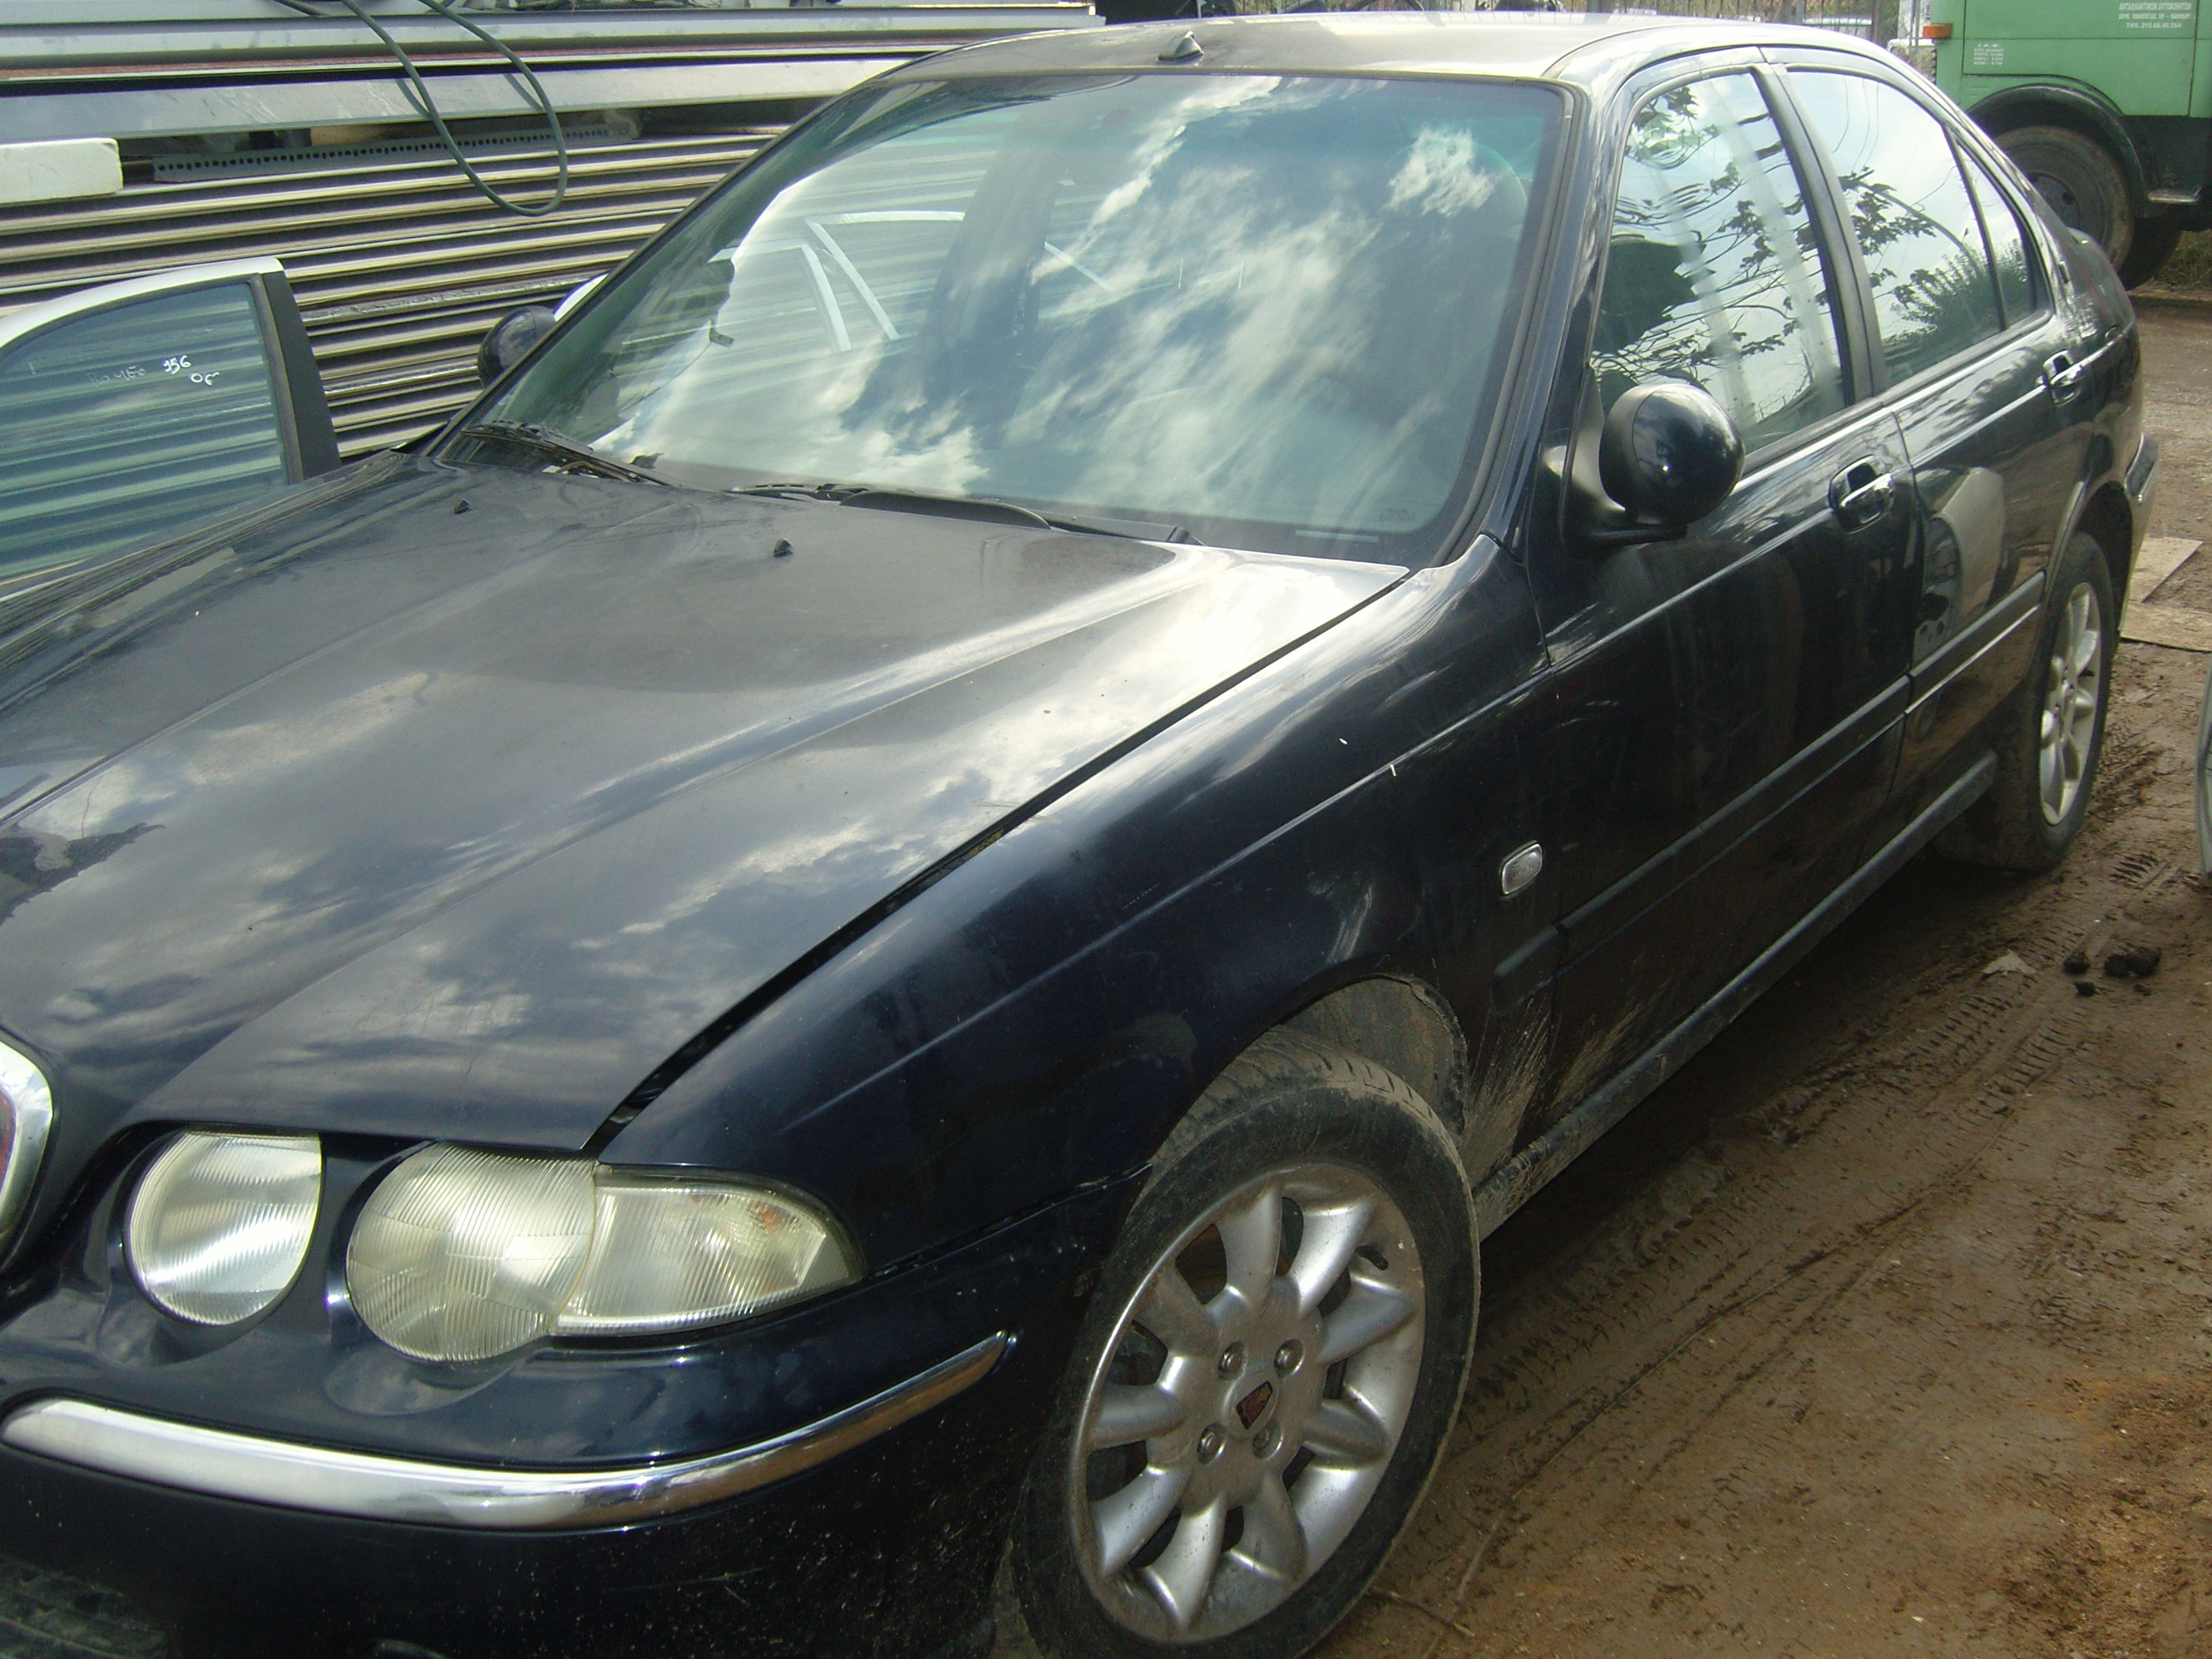 Μίζα ( 001106016 ) Rover 45 ’00 Προσφορά.